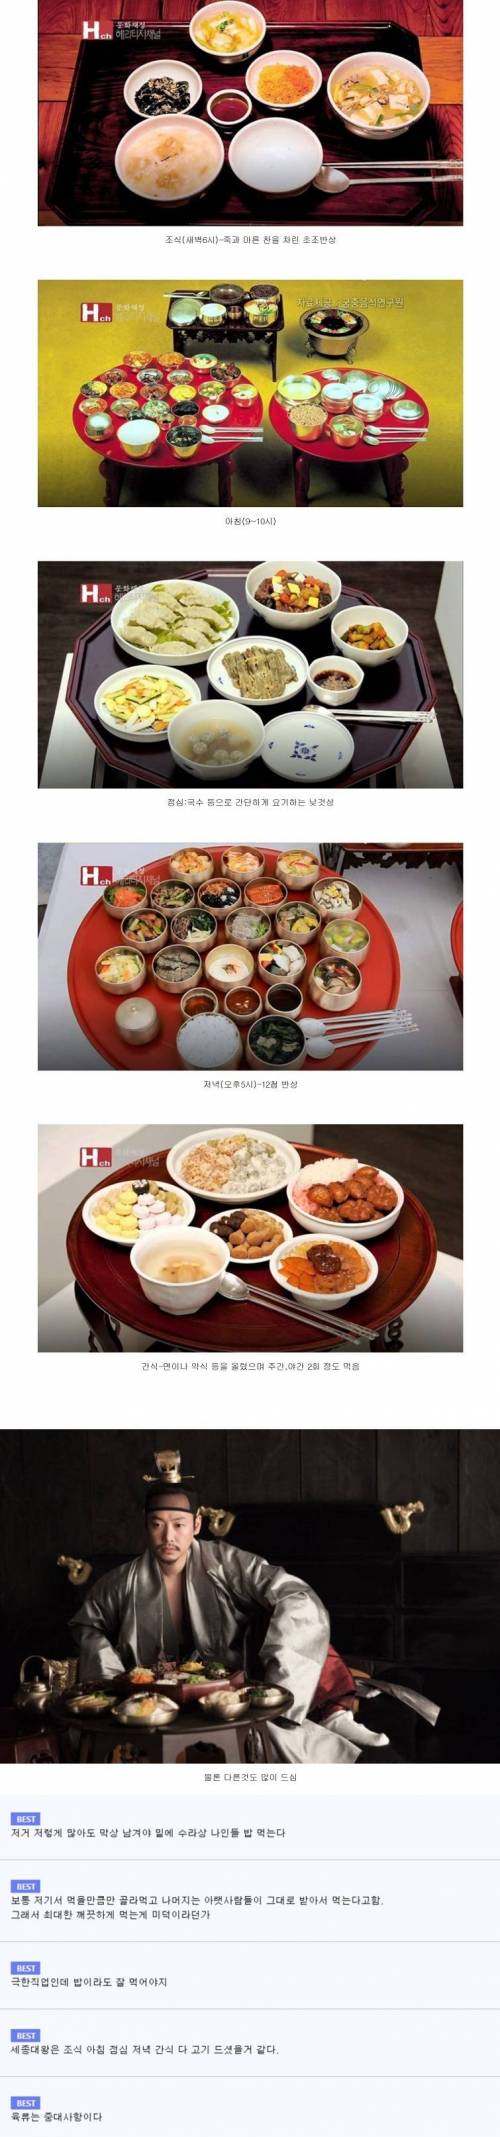 조선시대 왕의 밥상